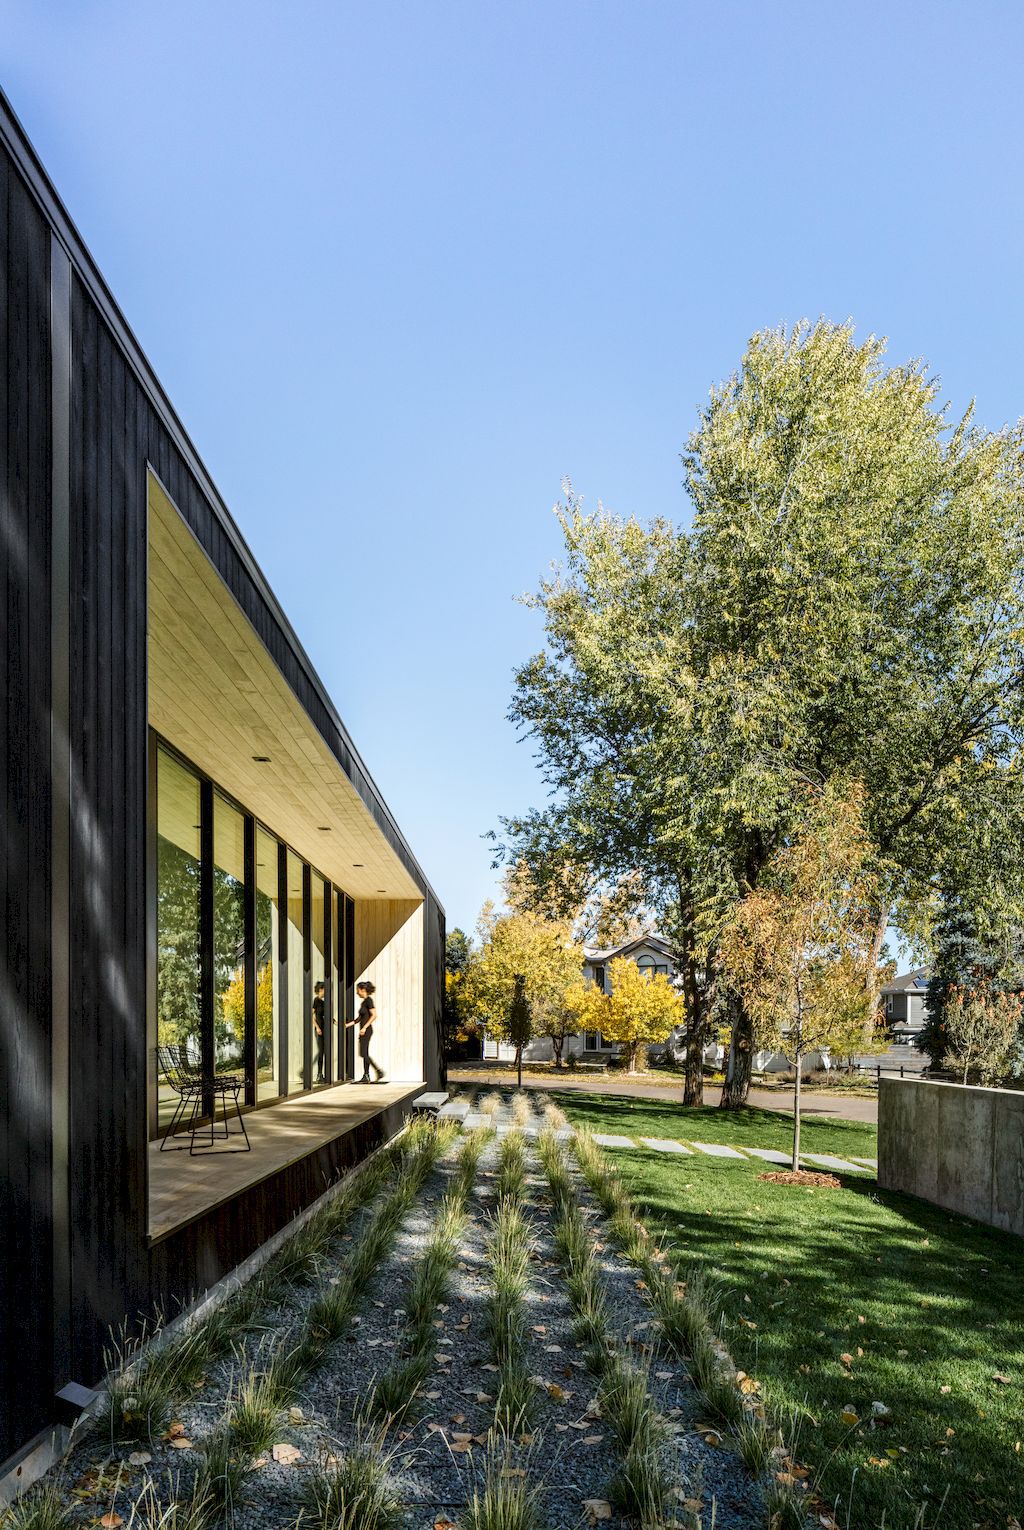 Vista Drive Pavilion House in Colorado by Studio B Architecture + Interiors